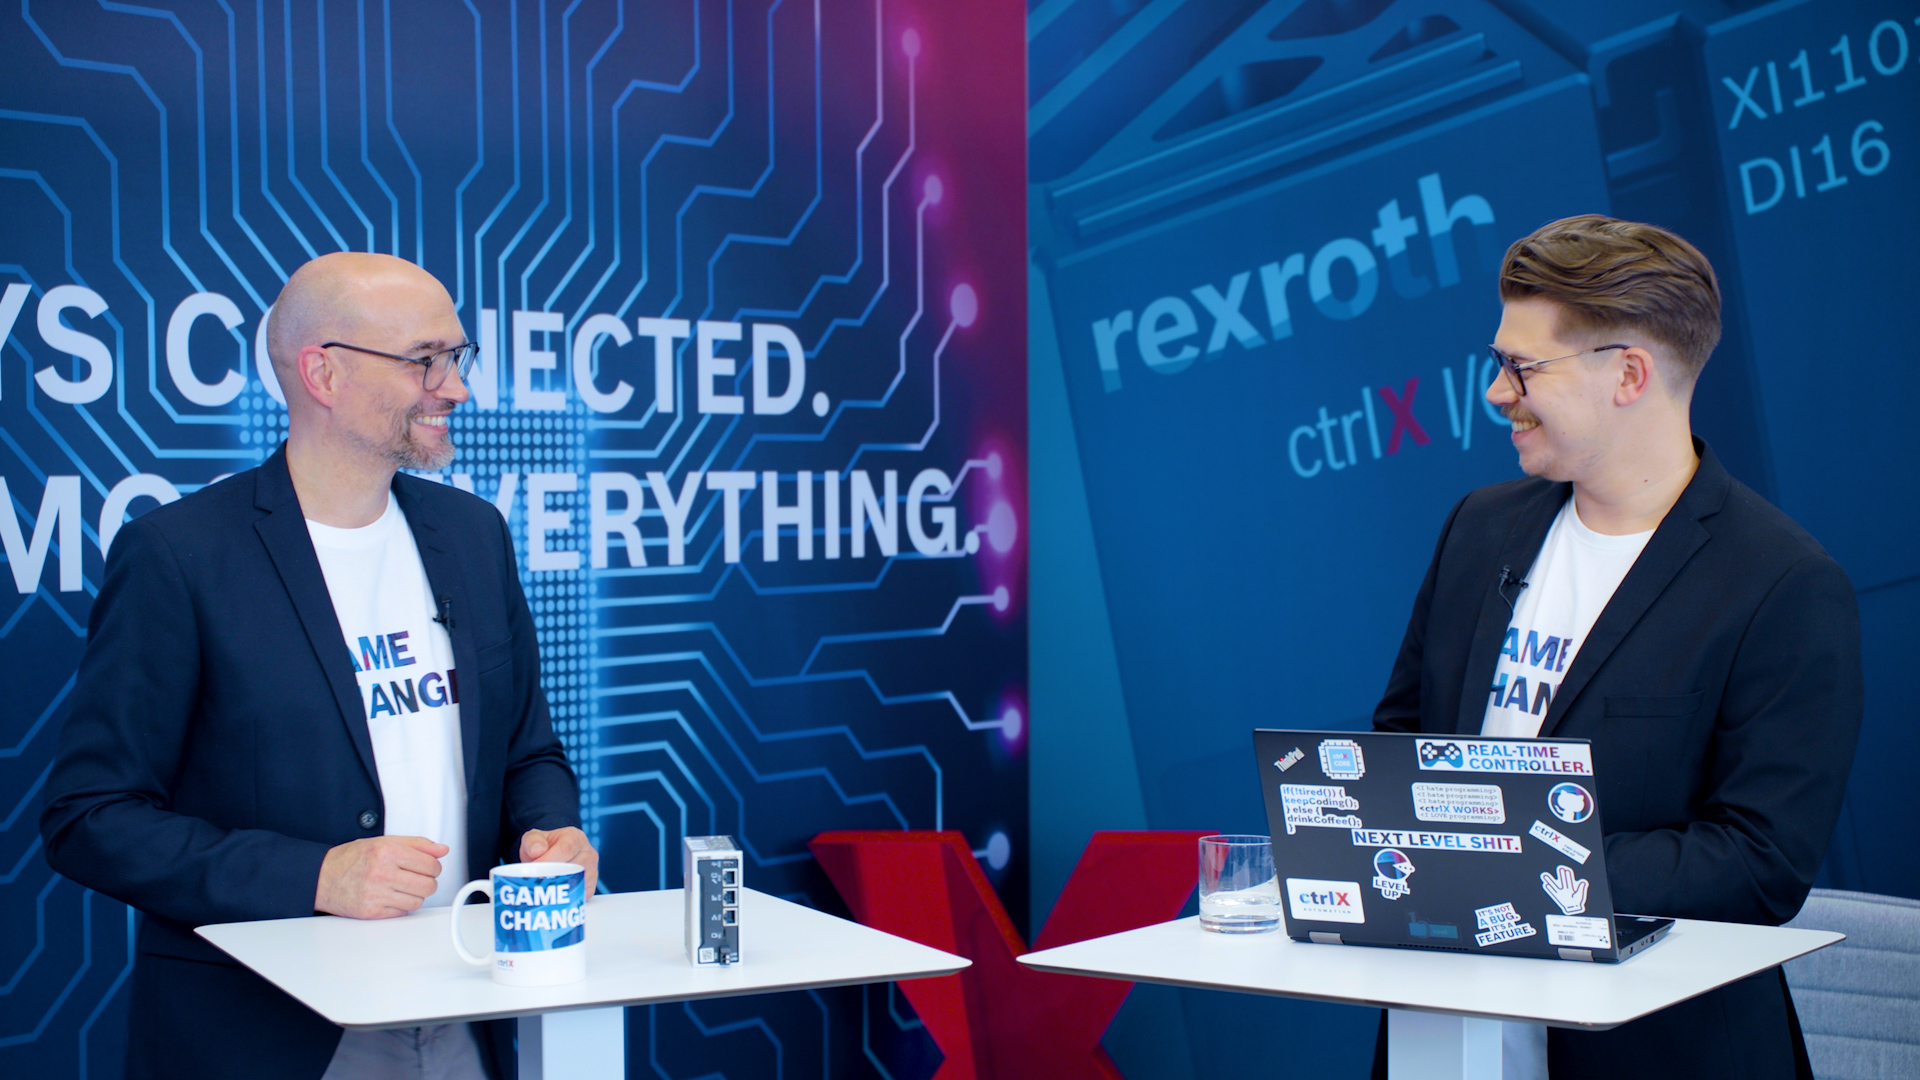 Gastgeber Christian Zentraf und sein Gast Benedikt Rüb stehen an Besprechungstischen und sprechen über den ctrlX Configurator, dem Konfigurationstool der Automatisierungslösung ctrlX AUTOMATION